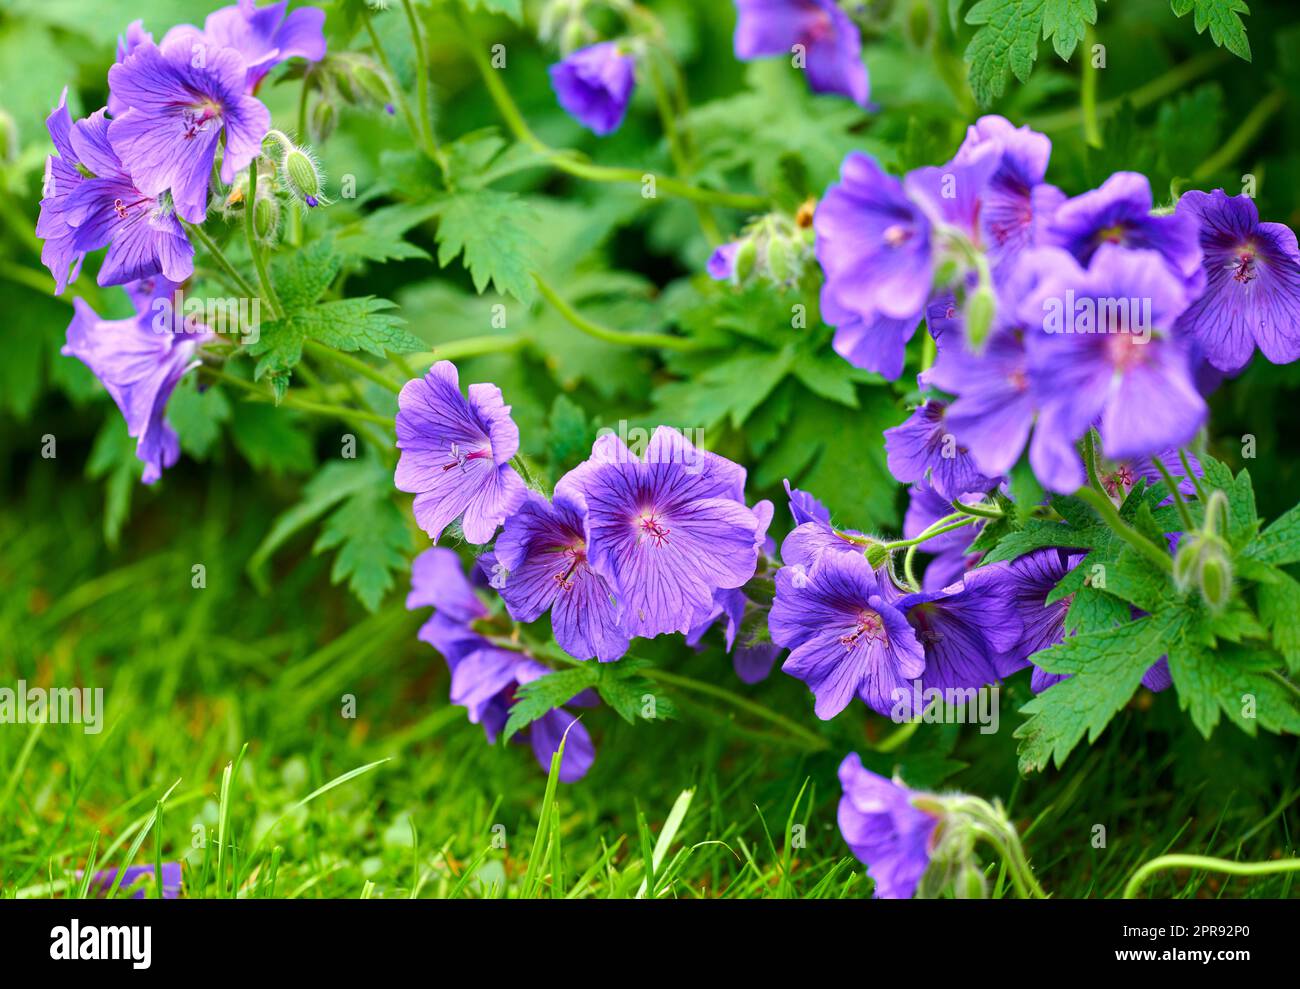 Fiori di geranio viola che crescono all'aperto in un parco. Cespuglio di indaco o gerani blu che fioriscono in un lussureggiante giardino o cortile sul retro in primavera. Delicati fiori selvatici per sfondo naturale con spazio di copia Foto Stock